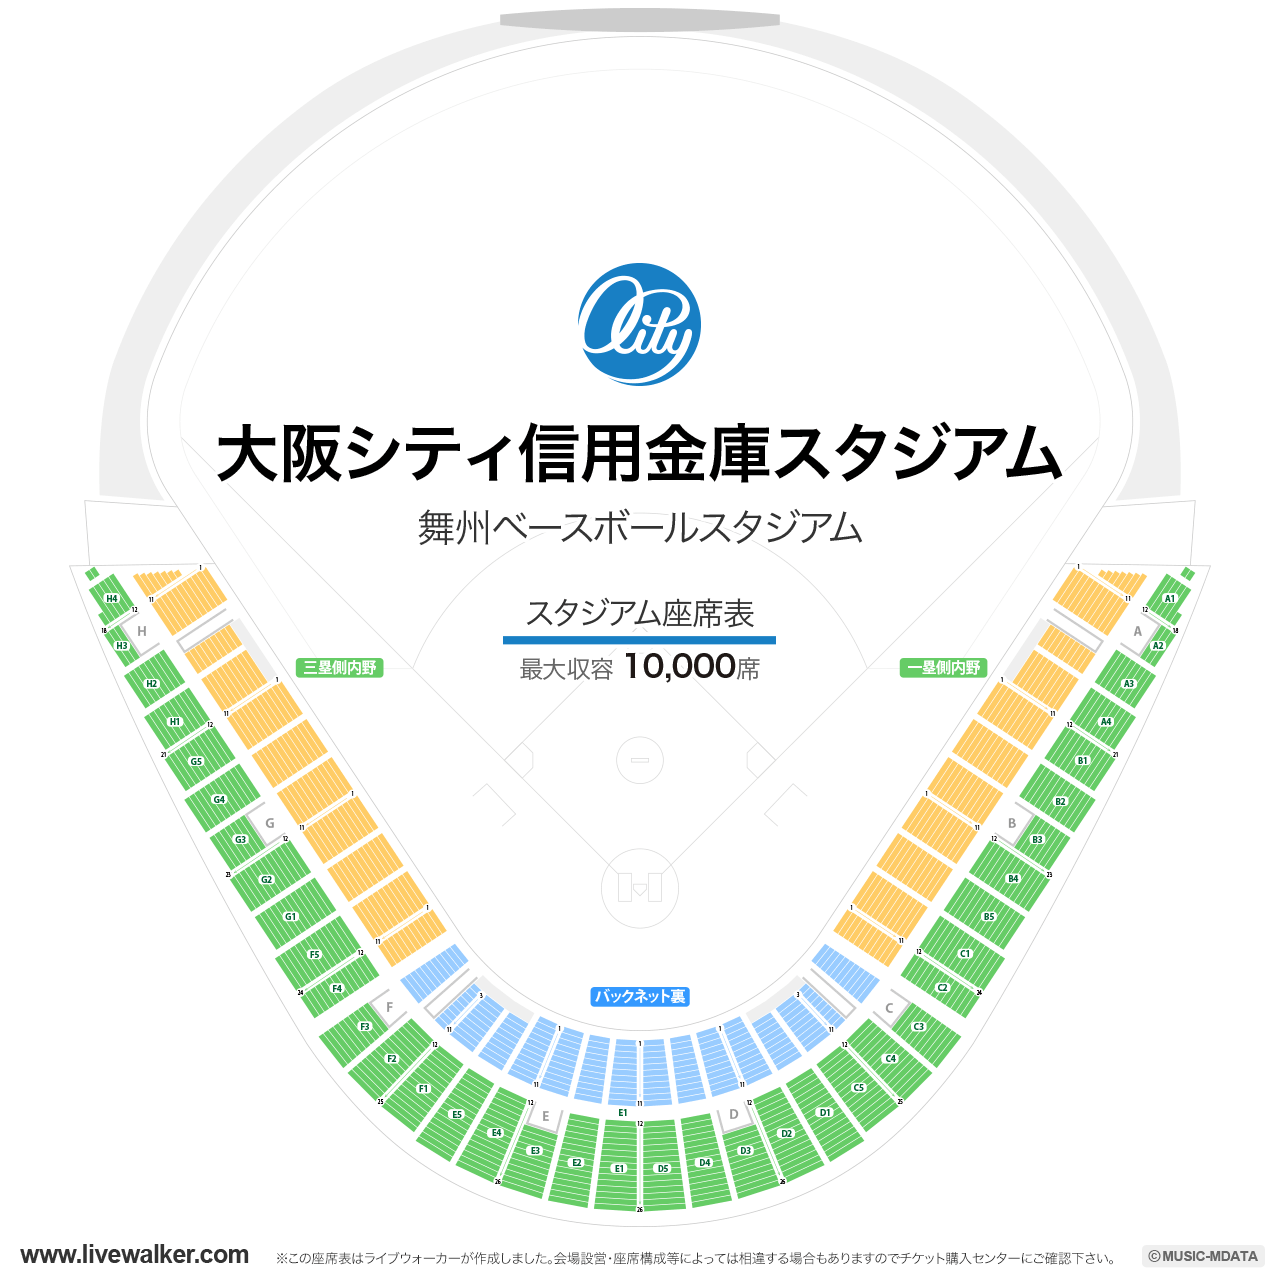 大阪シティ信用金庫スタジアムの座席表